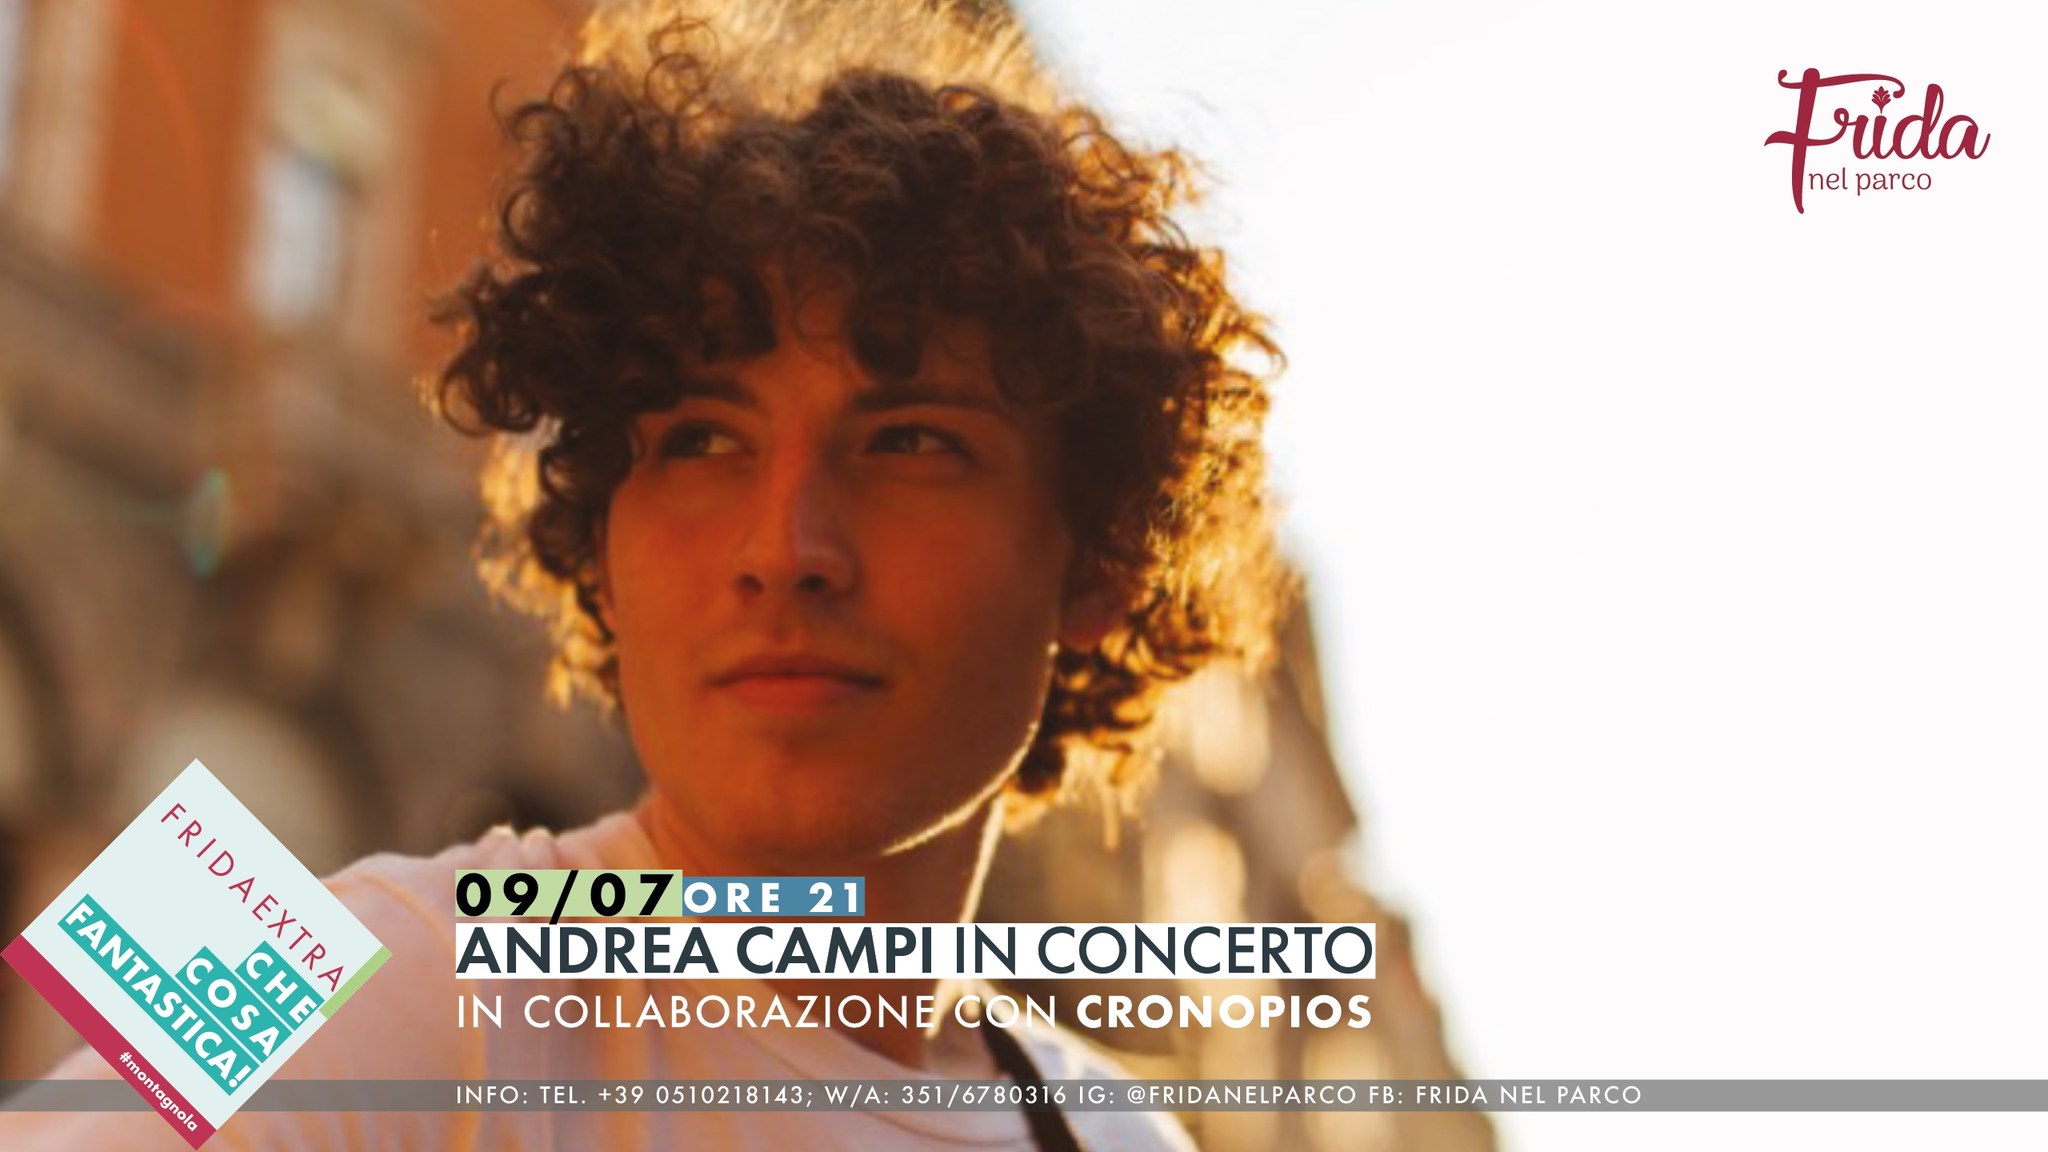 Andrea Campi in concerto, in collaborazione con Cronopios.